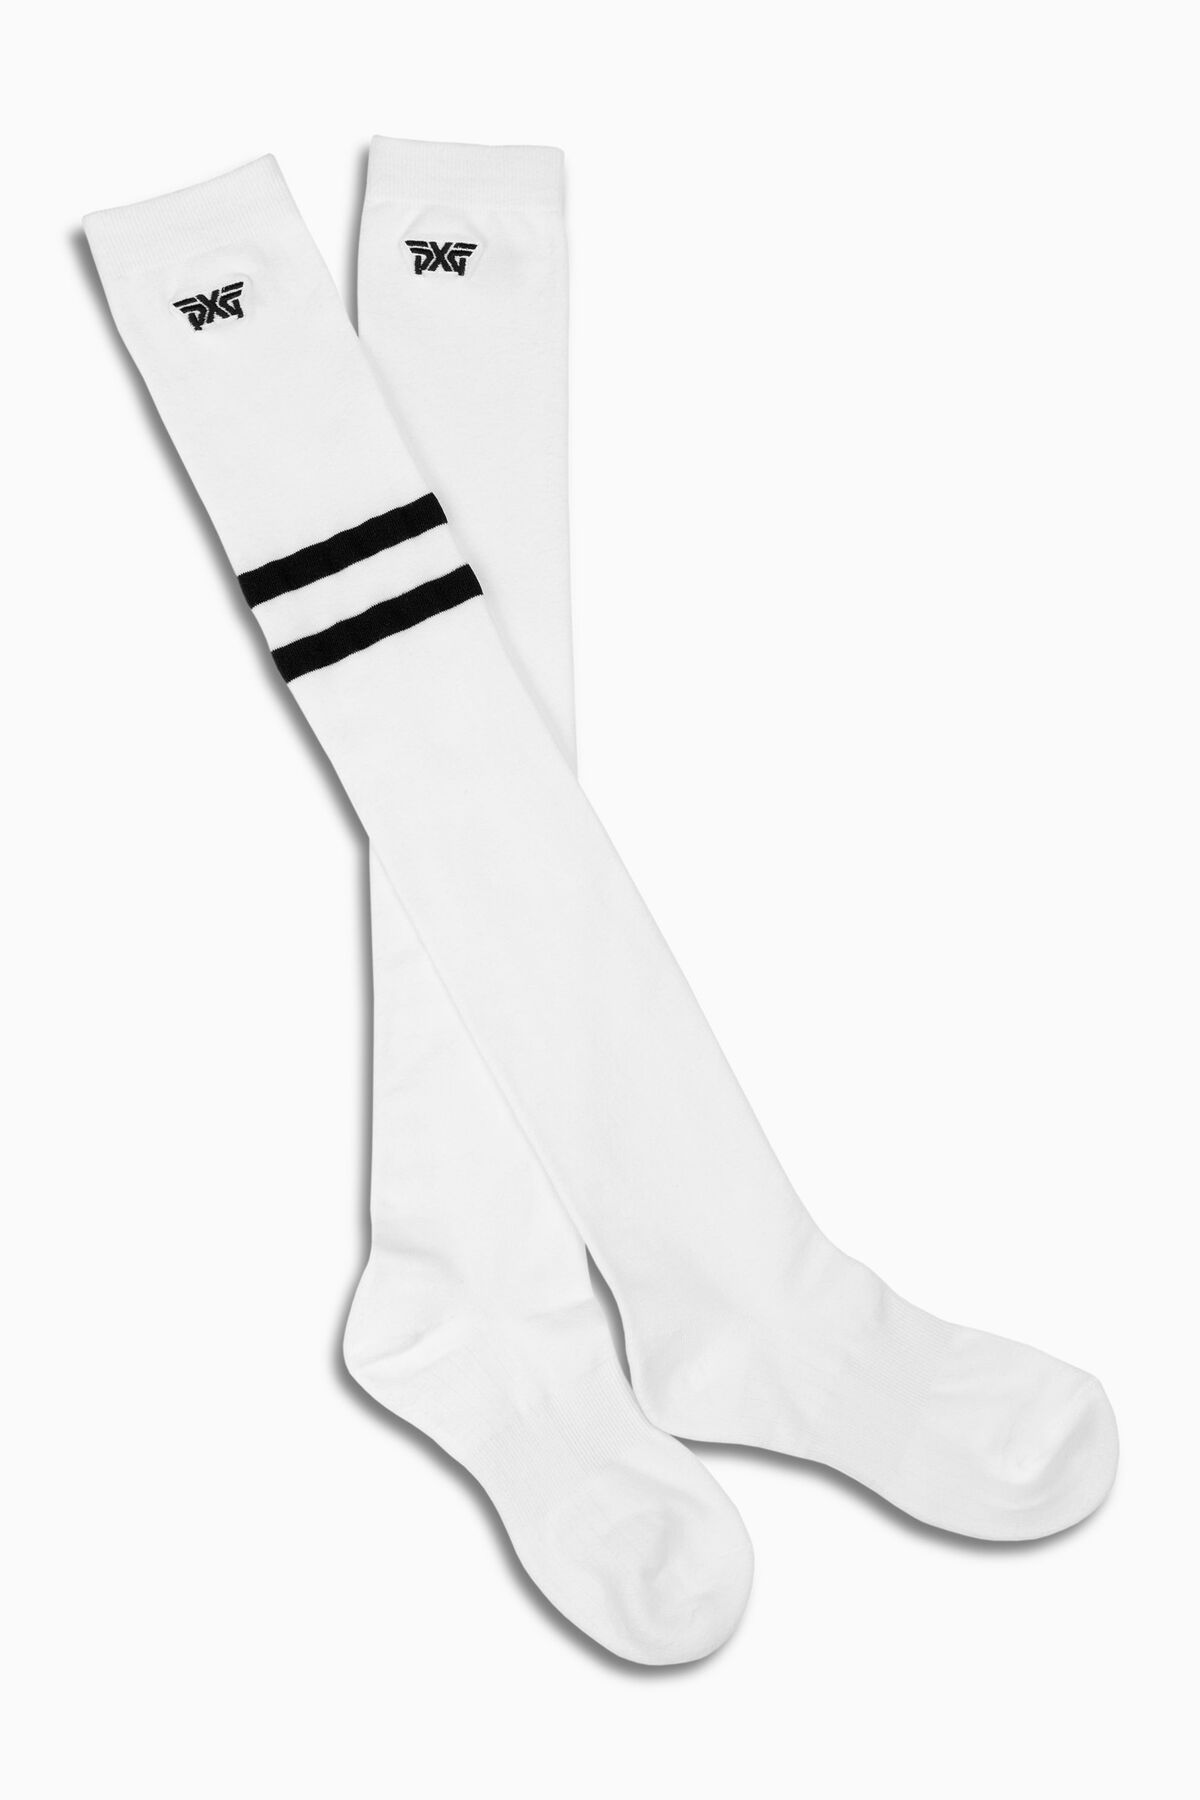 2021 Women's Knee High Socks- White White